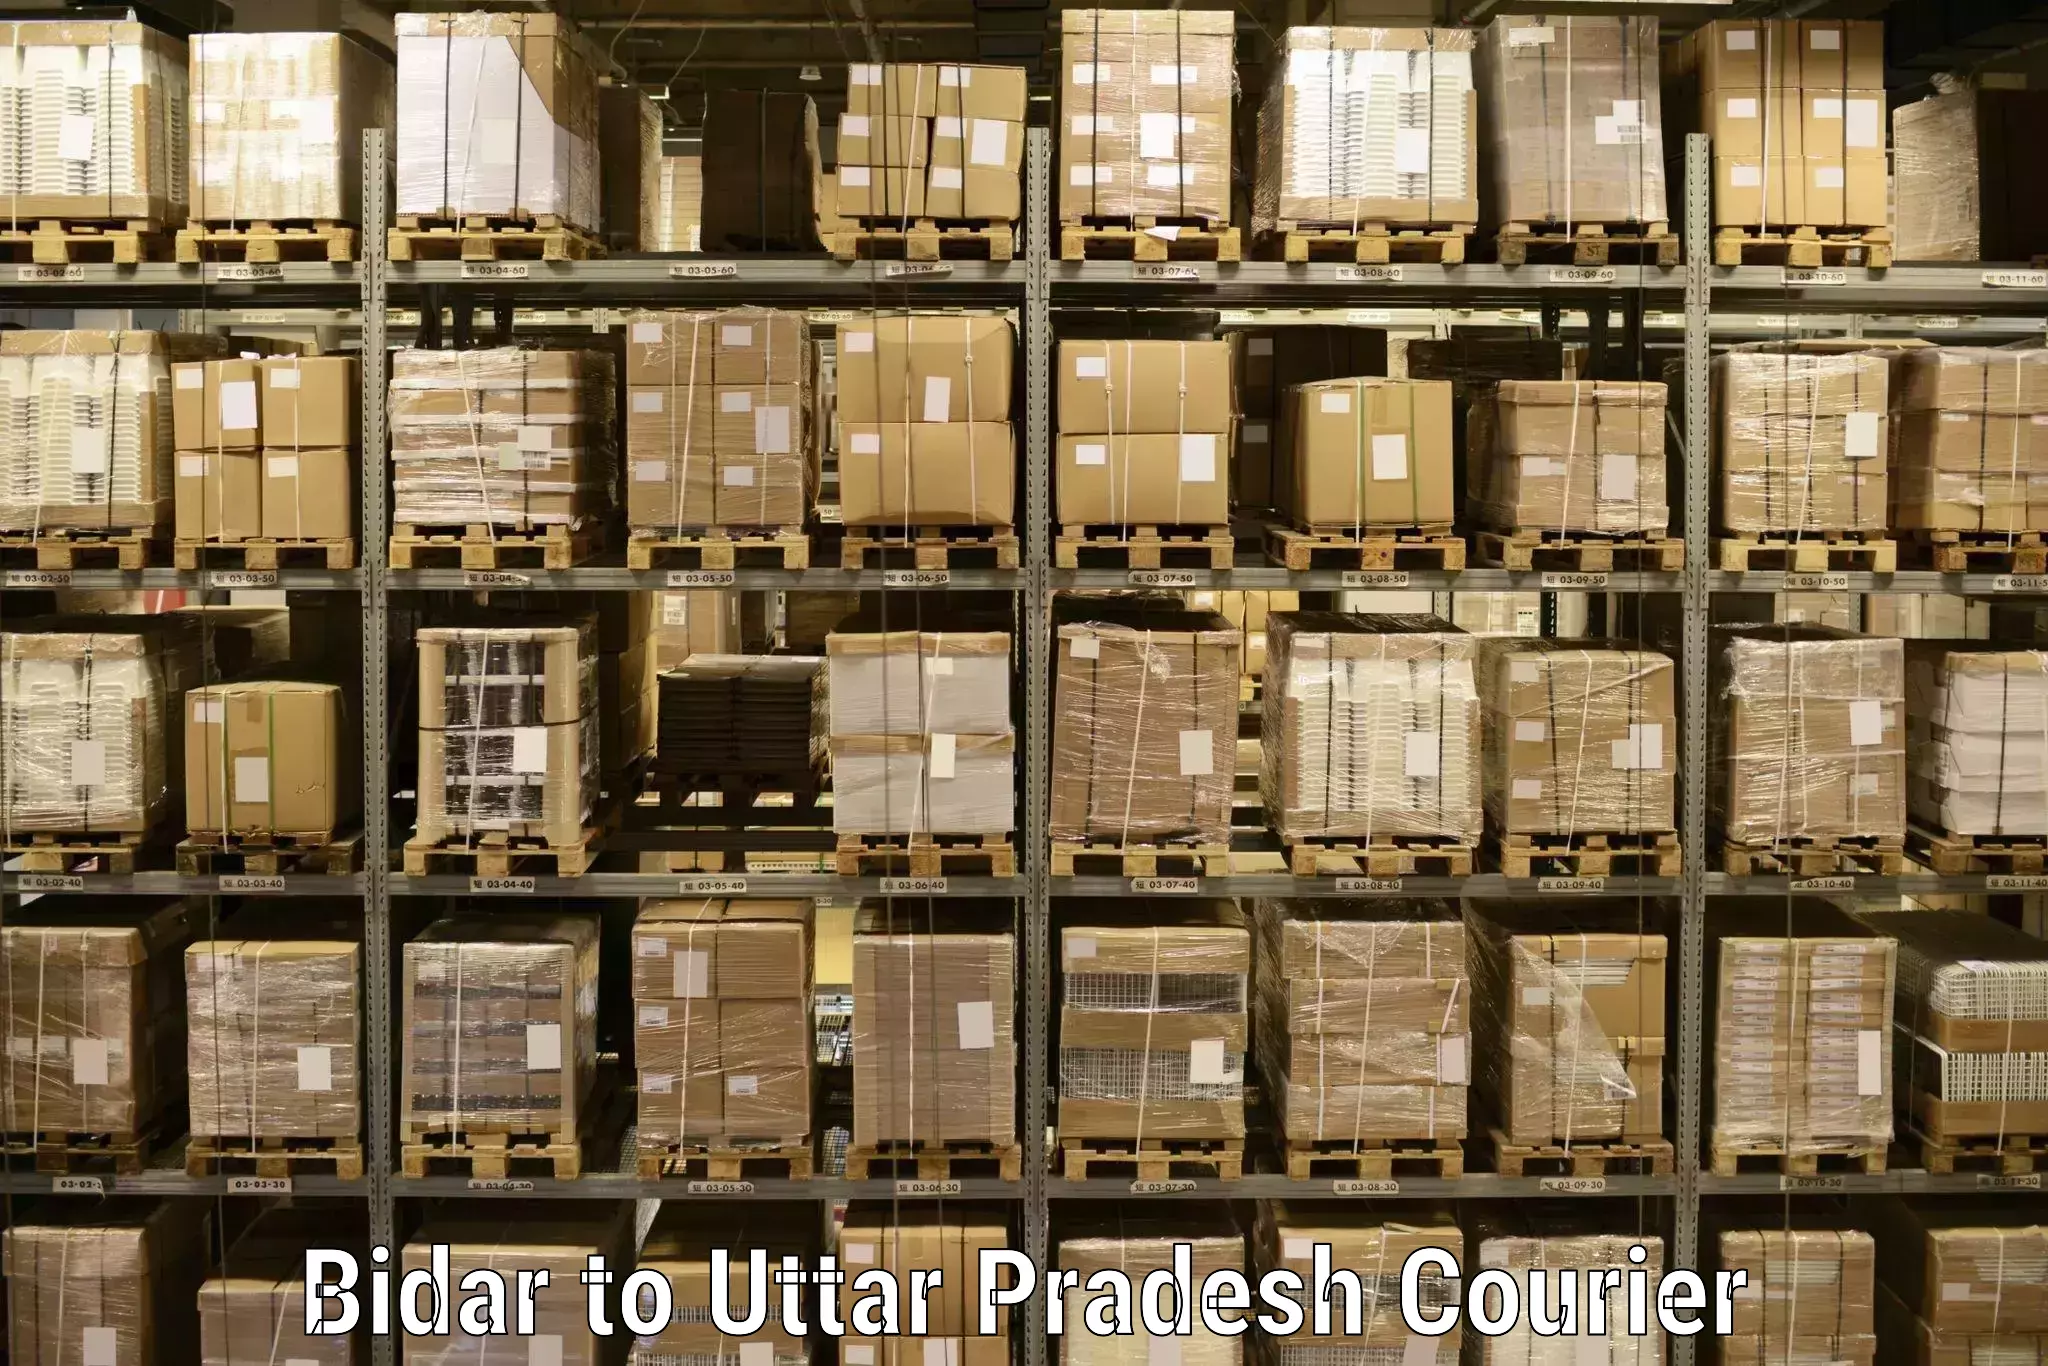 Efficient parcel delivery Bidar to Kanth